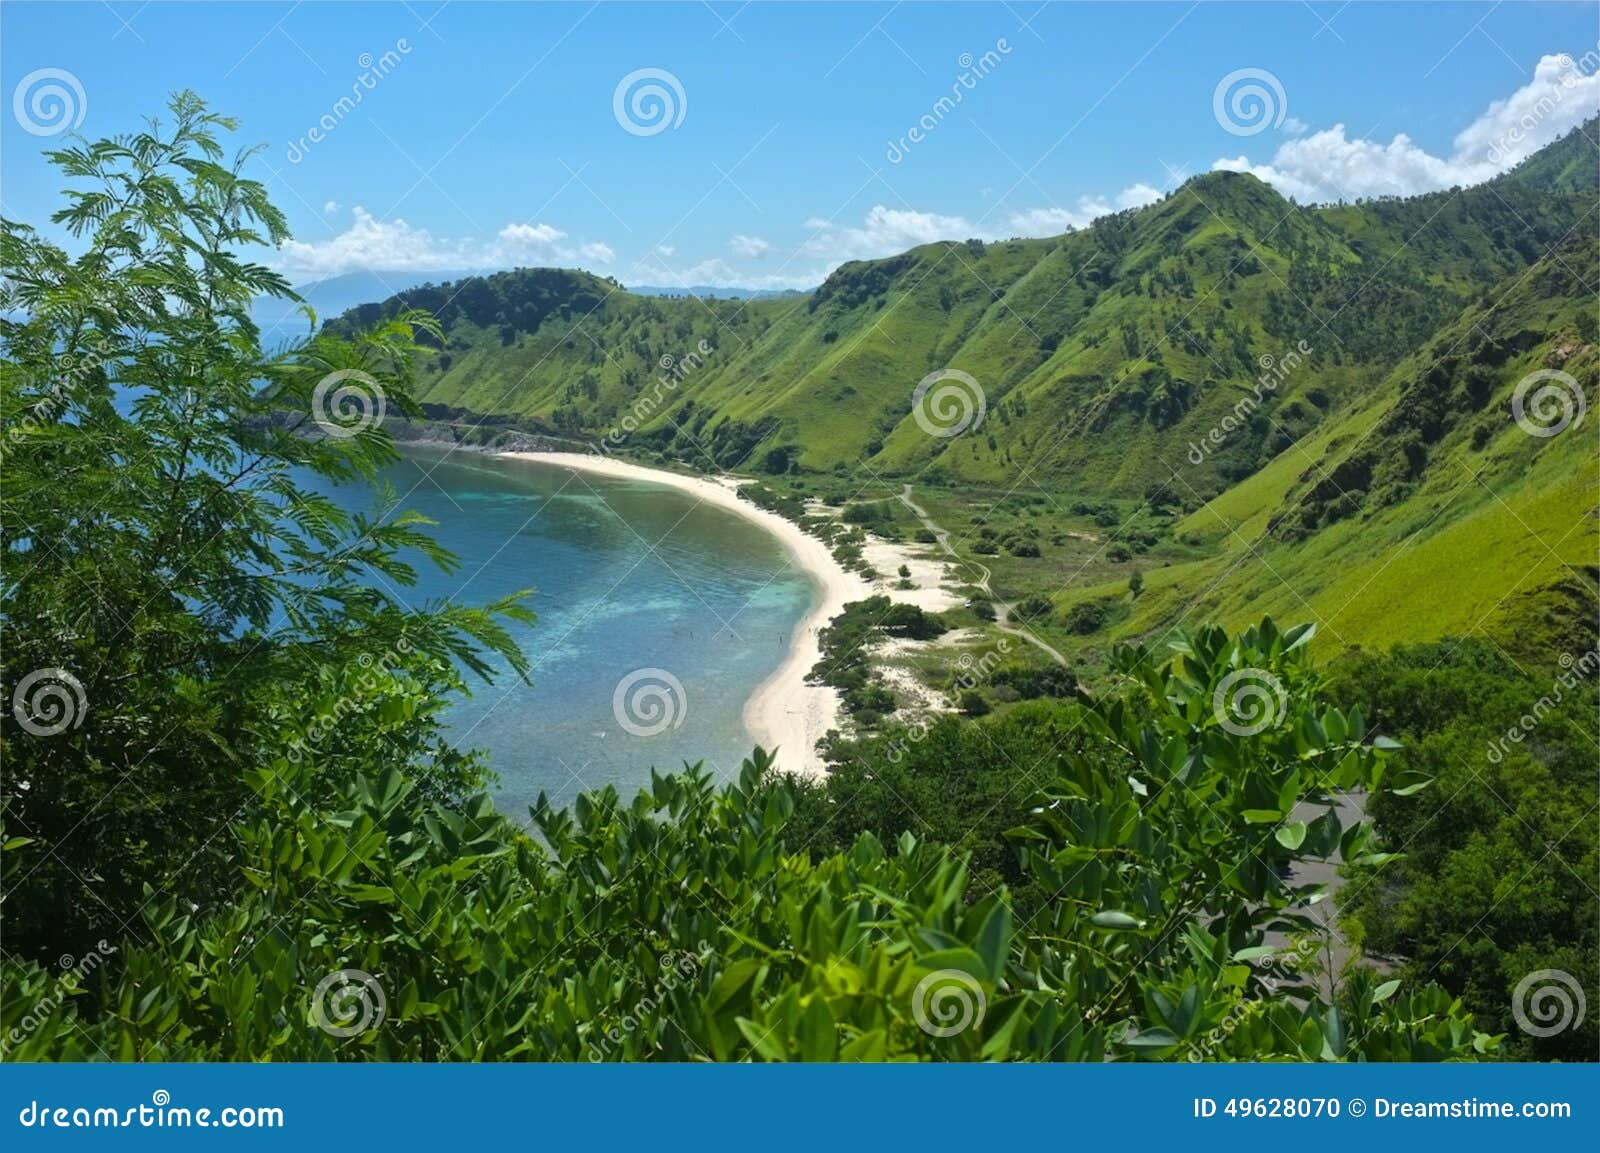  Osttimor  stockfoto Bild von abgelegen sch n strand 